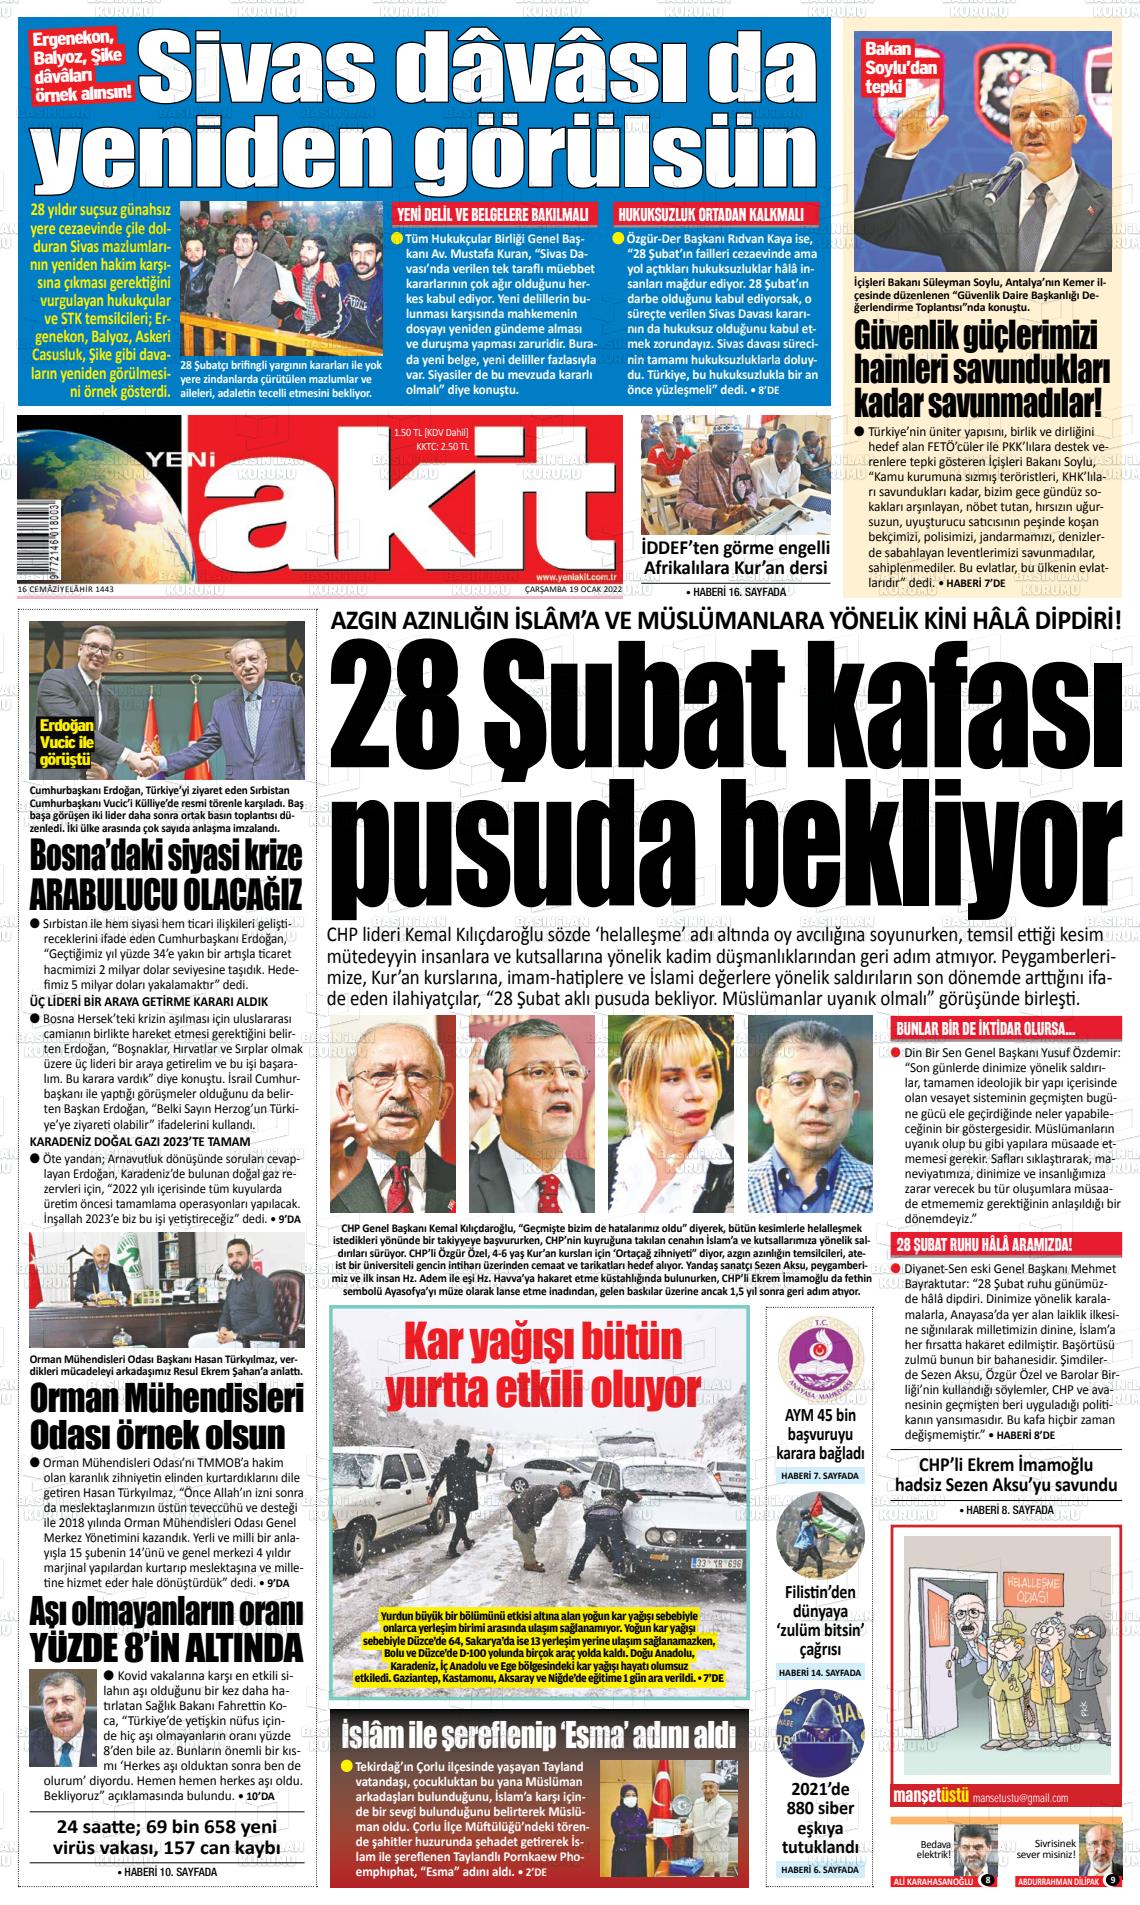 19 Ocak 2022 Yeni Akit Gazete Manşeti